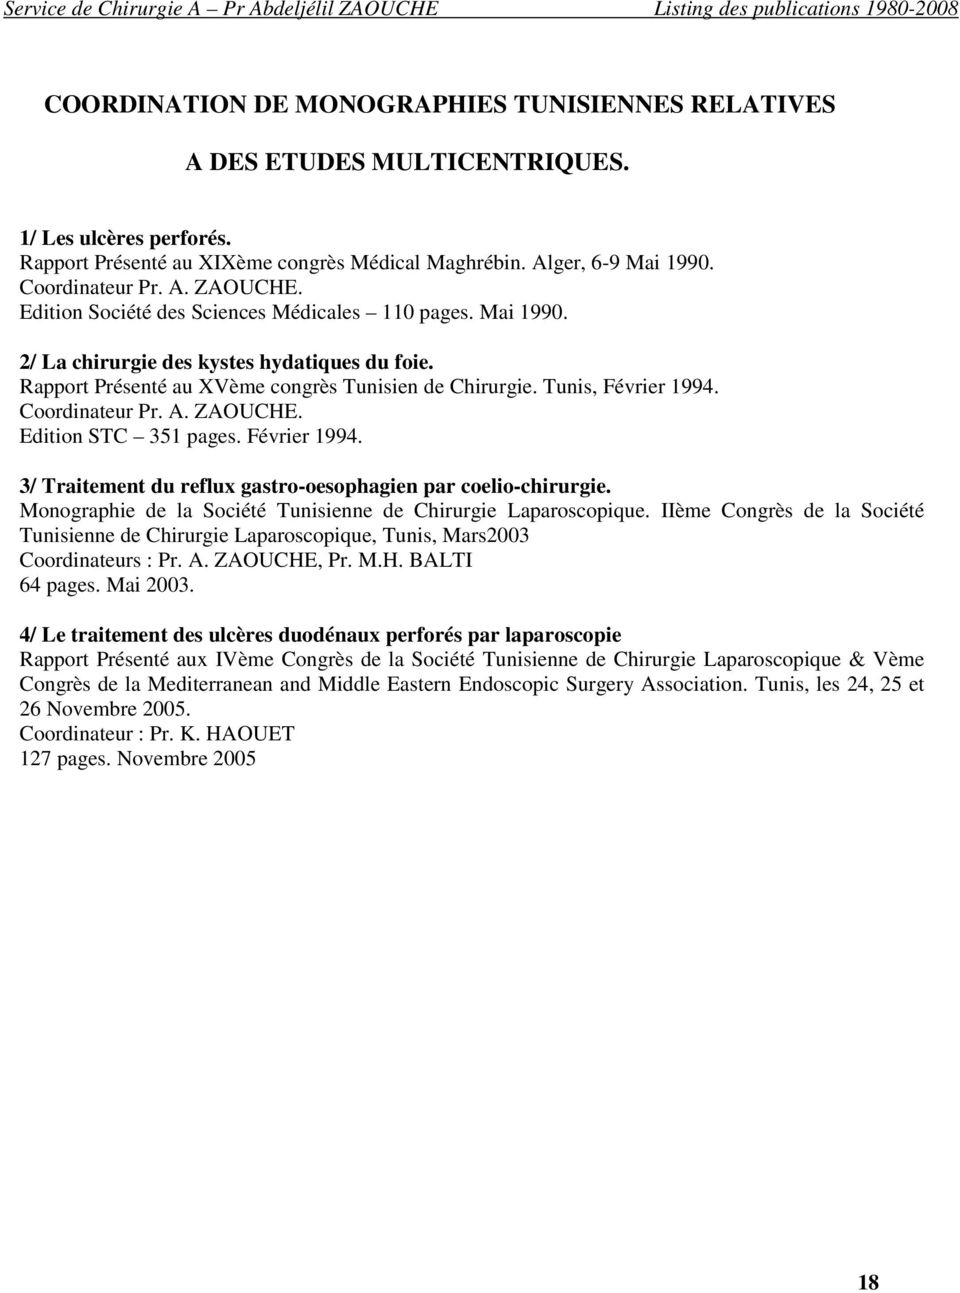 Coordinateur Pr. A. ZAOUCHE. Edition STC 351 pages. Février 1994. 3/ Traitement du reflux gastro-oesophagien par coelio-chirurgie. Monographie de la Société Tunisienne de Chirurgie Laparoscopique.